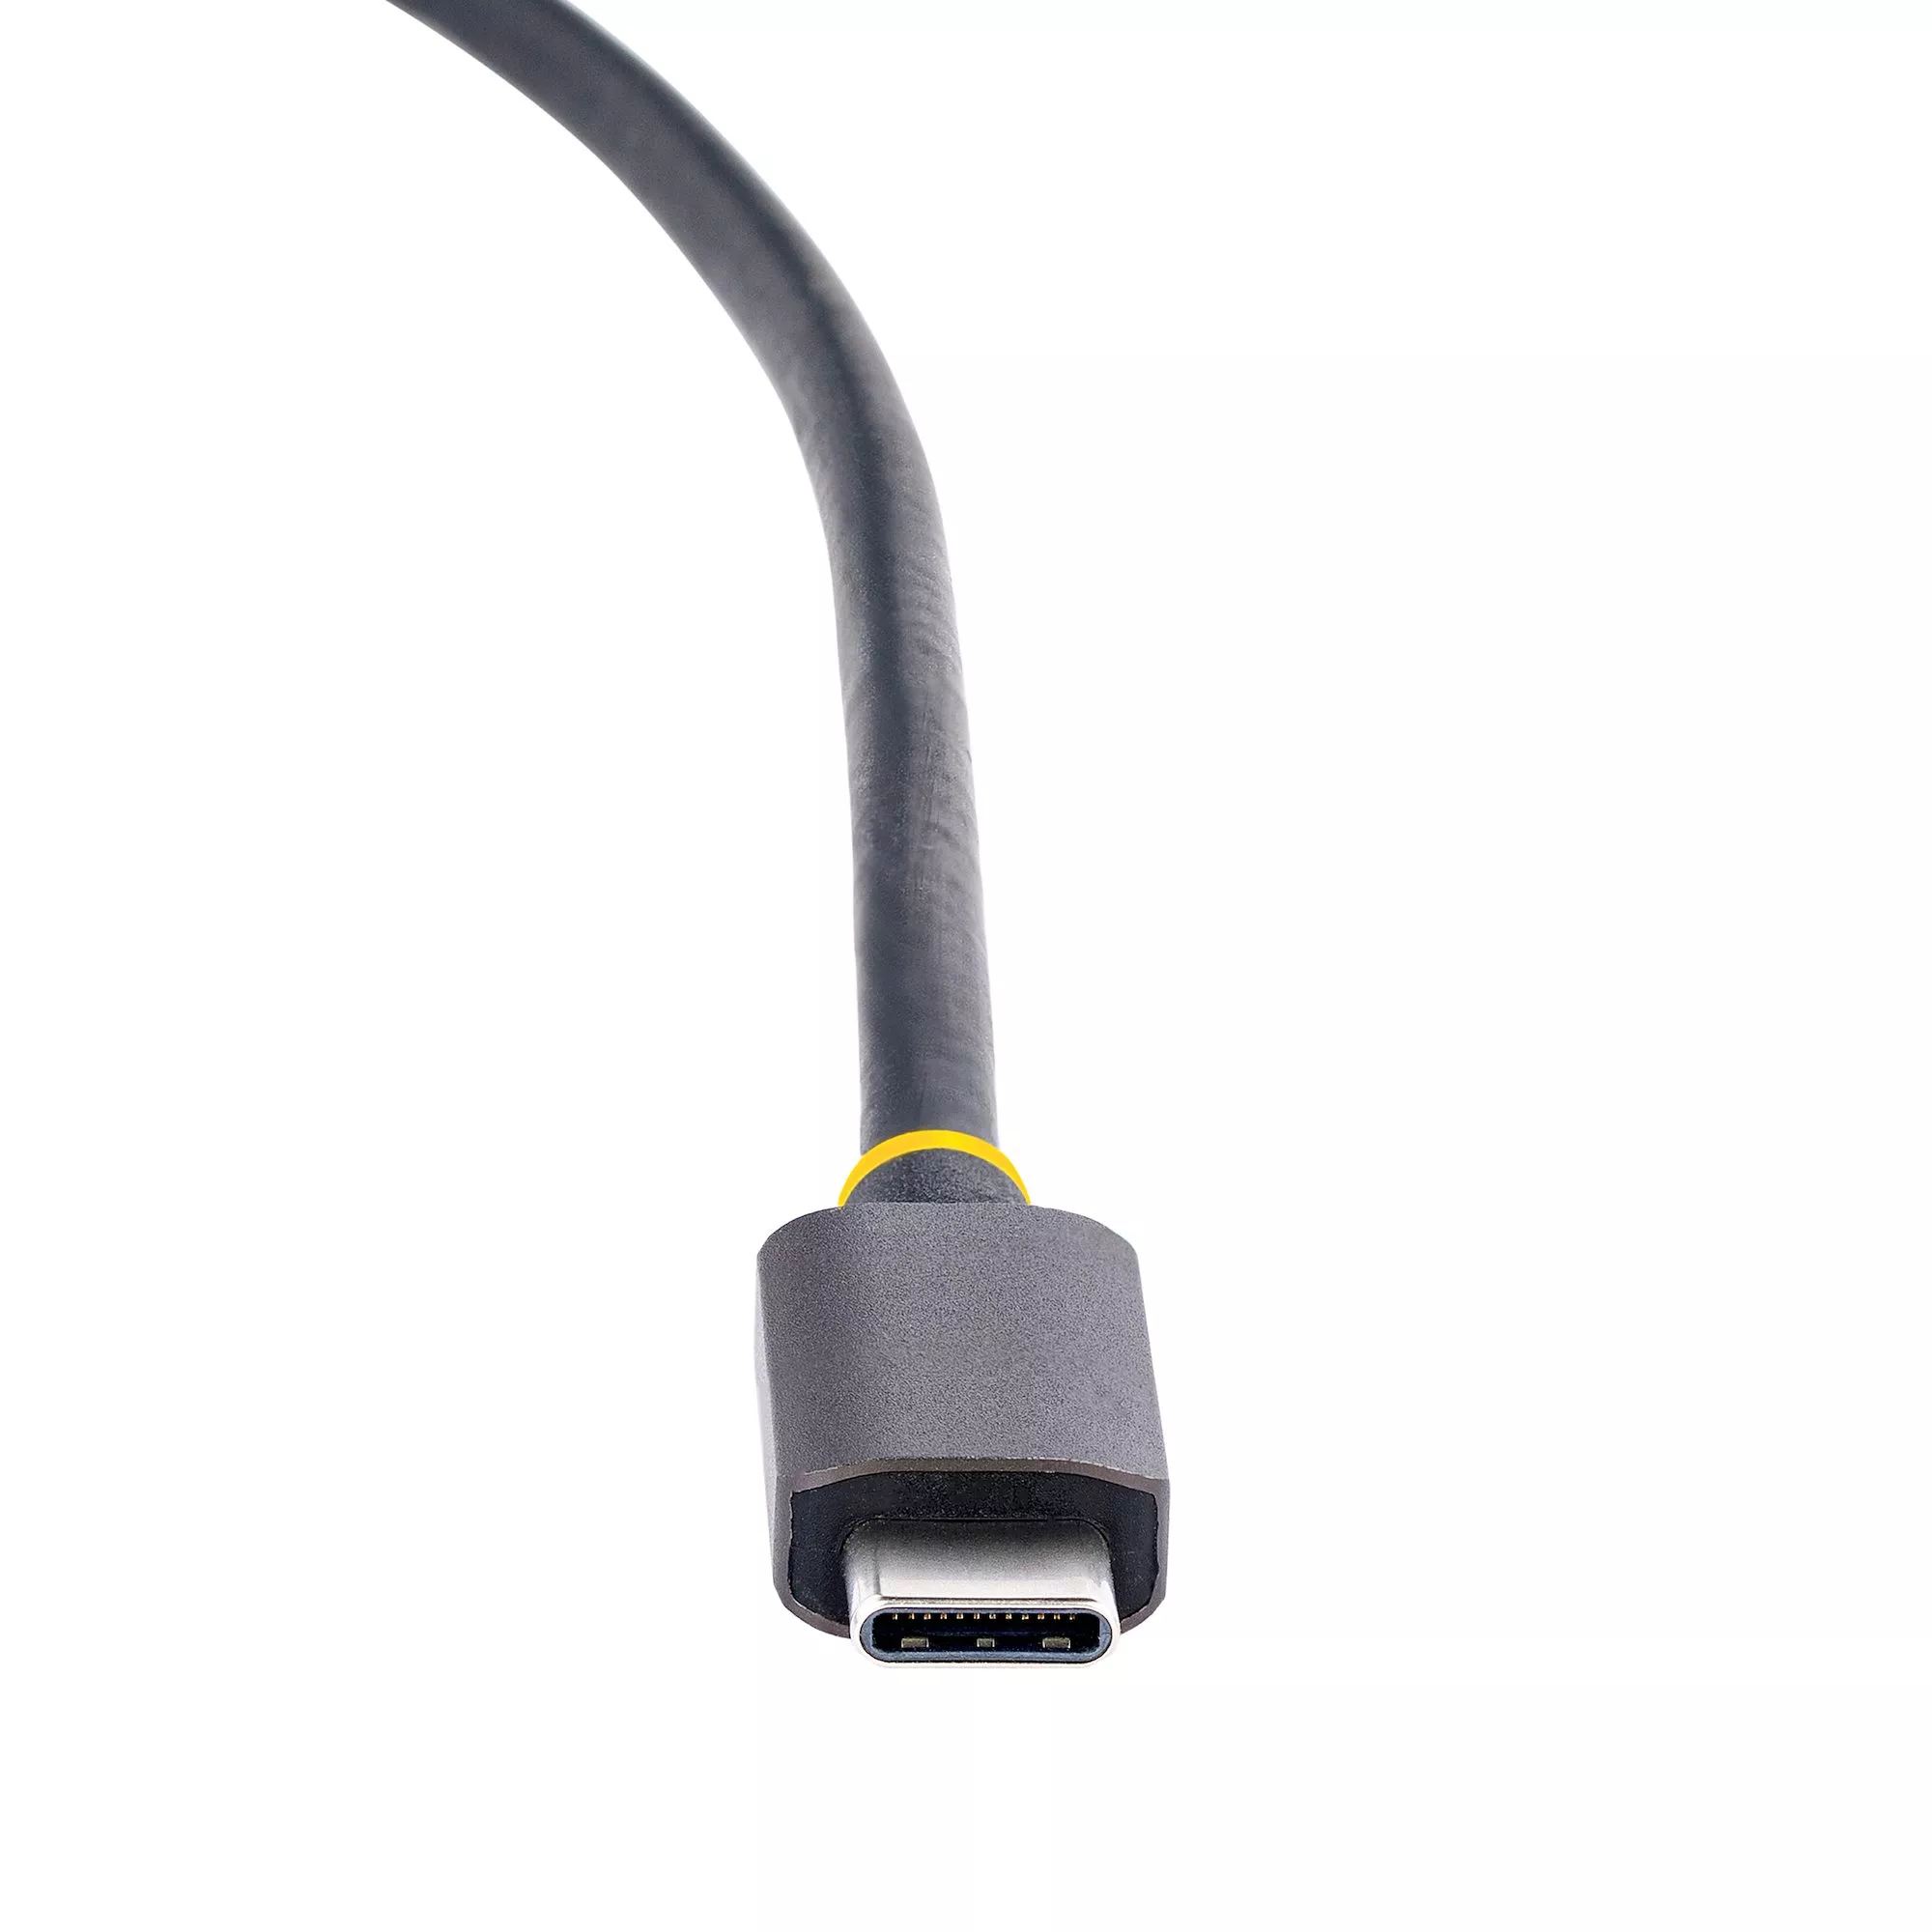 Station d'accueil USB C Double Moniteur HDMI pour HP Dell, multiport USB C  Hub Thunderbolt